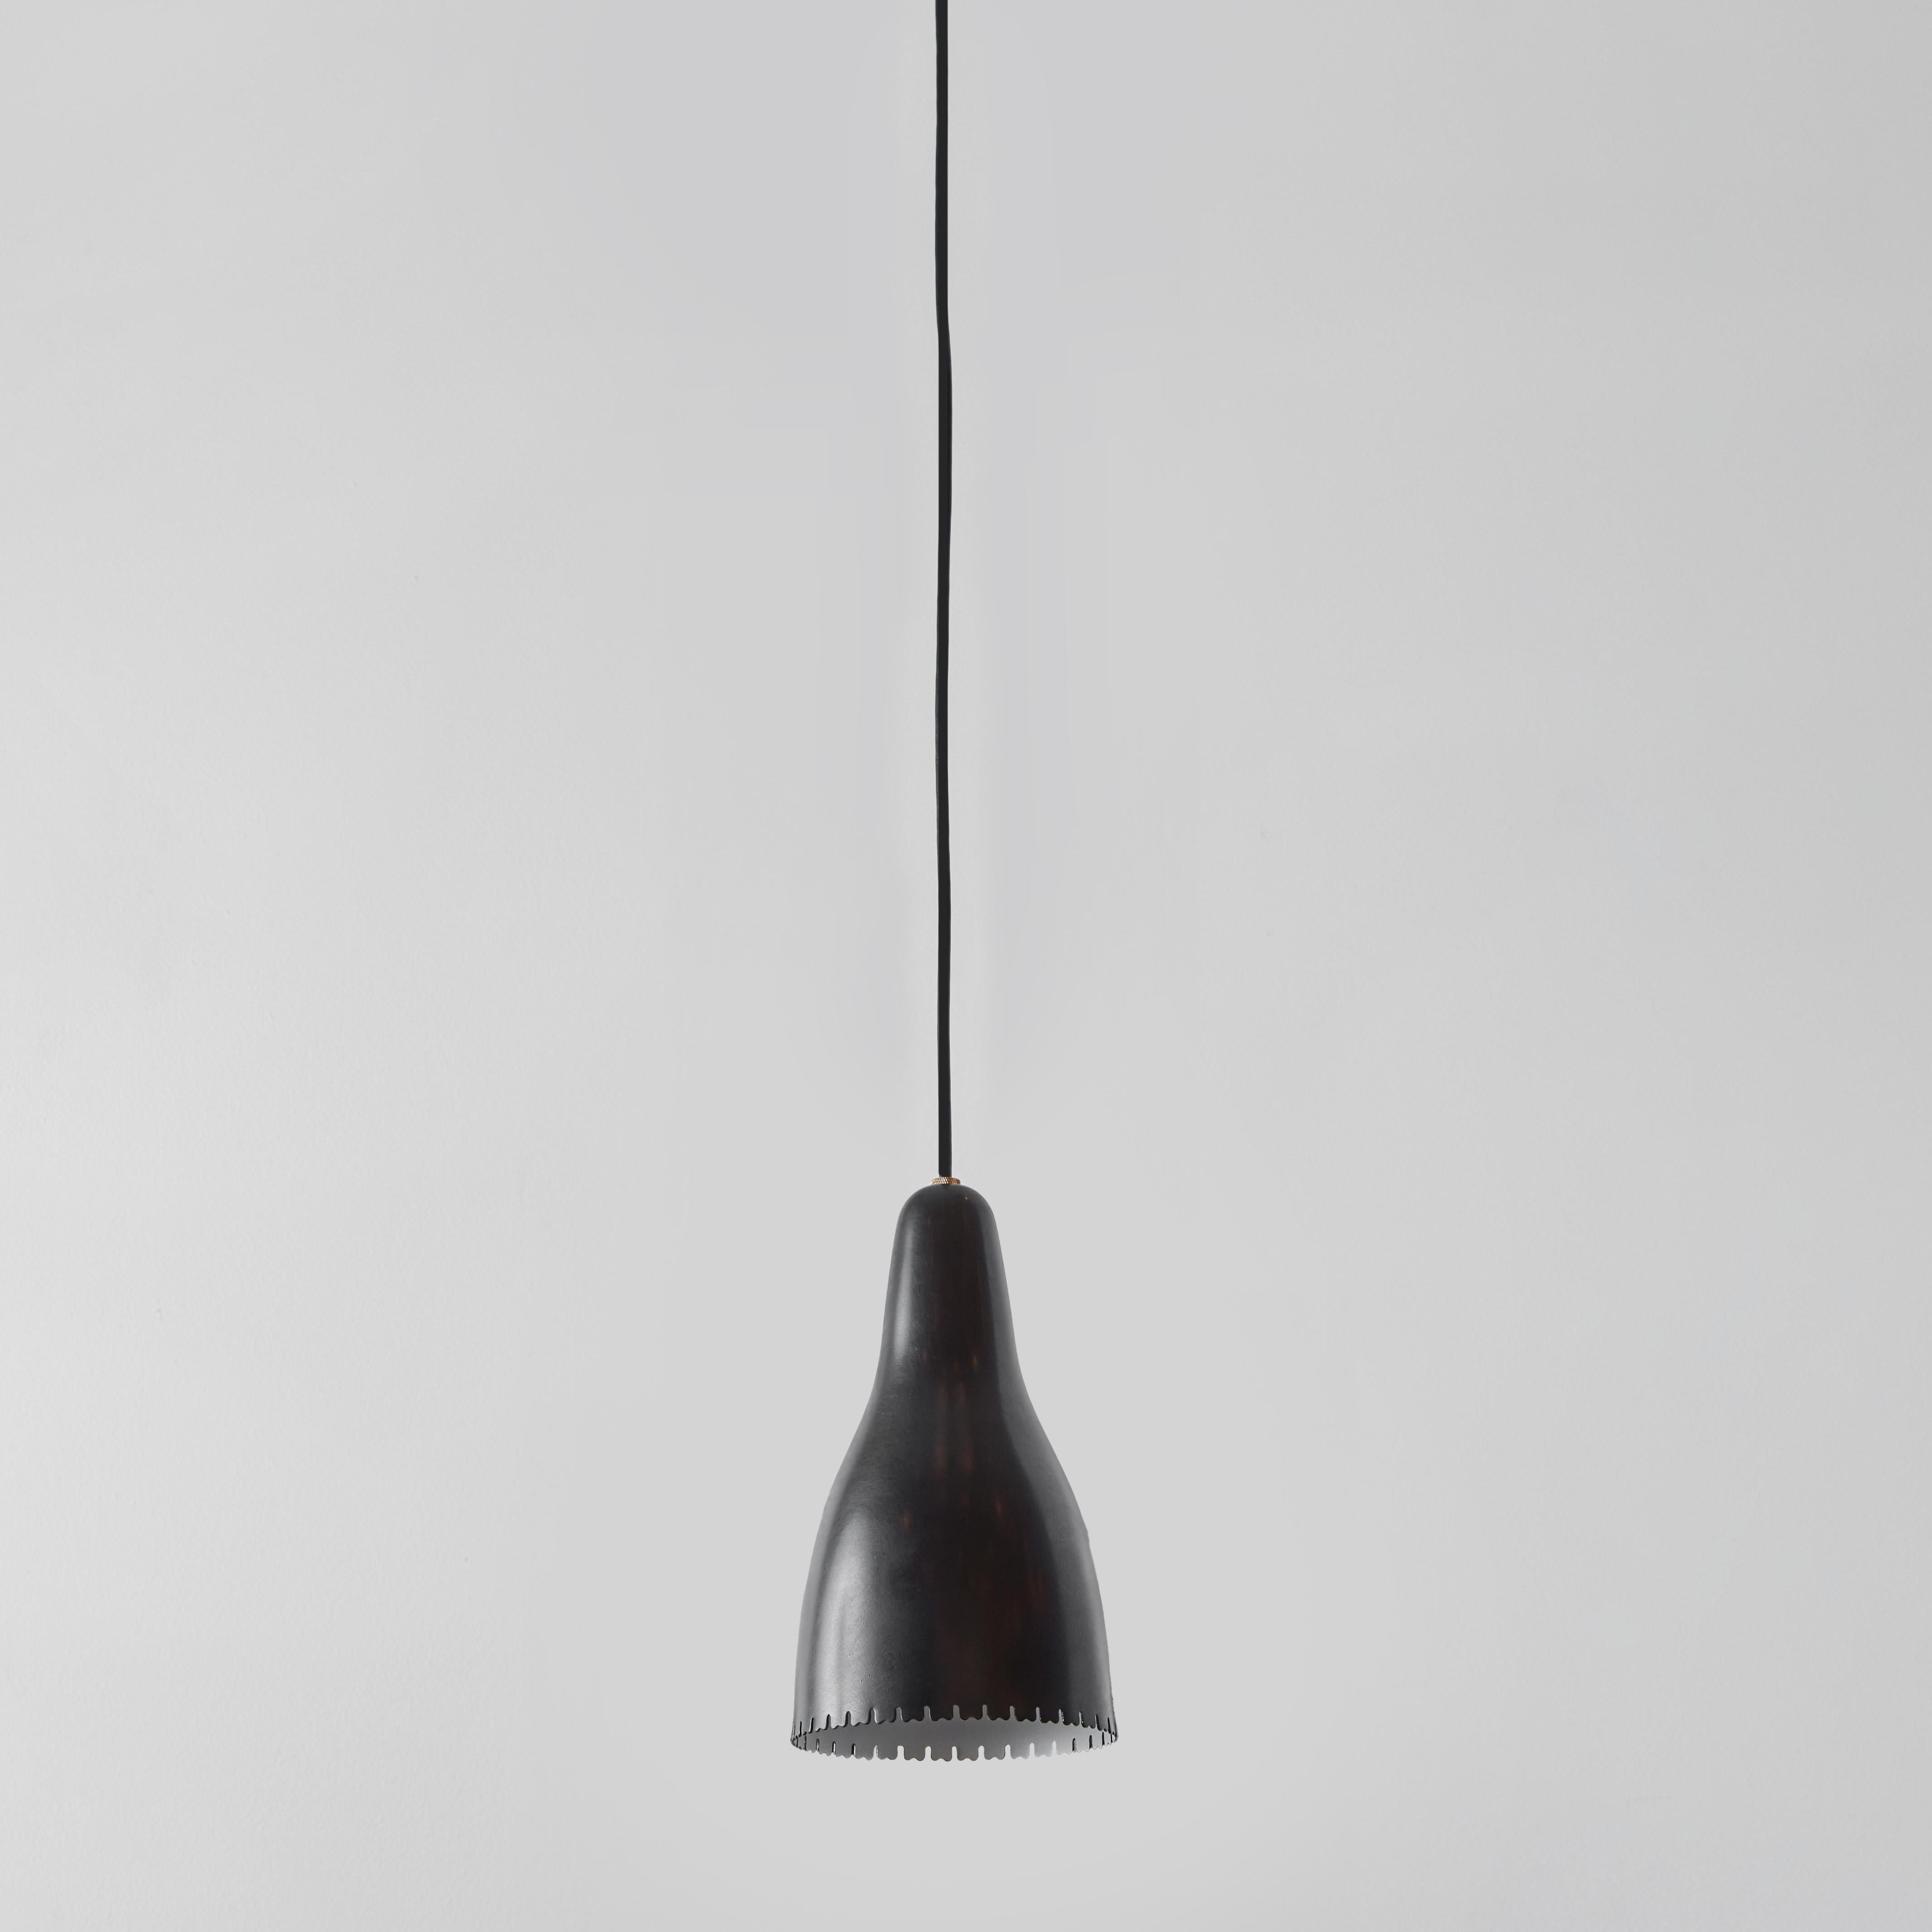 1950s Bent Karlby Black Painted Metal & Brass Suspension Lamp for Lyfa. Abat-jour en métal peint en noir, de forme architecturale et élégante, avec quincaillerie en laiton, Danemark, vers les années 1950. Un pendentif de la quintessence de la